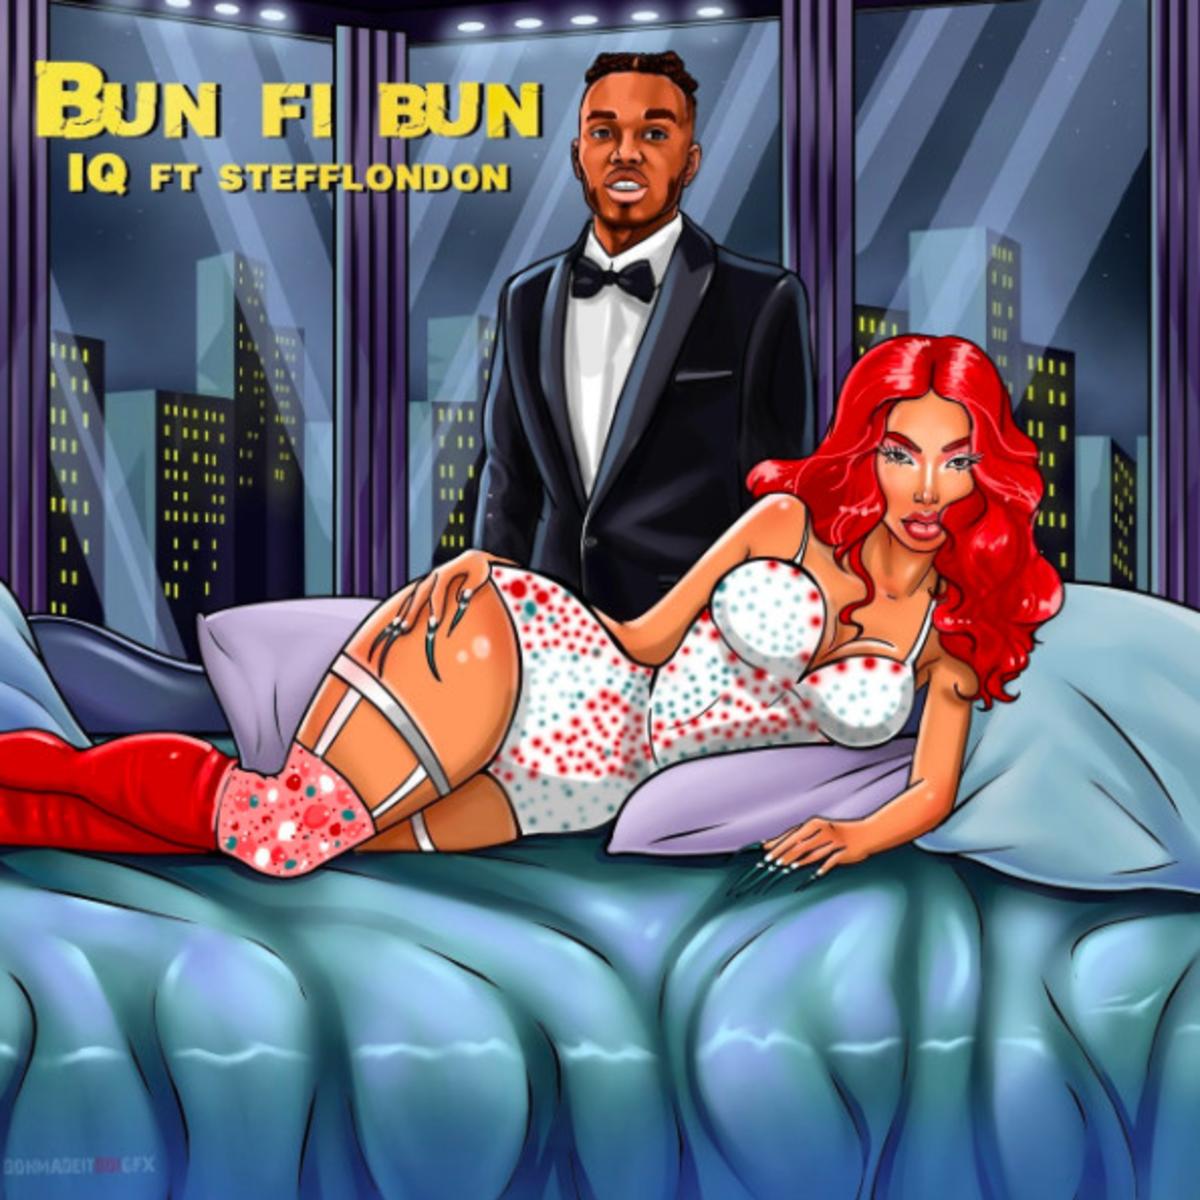 DOWNLOAD MP3: iQ - Bun Fi Bun Ft. Stefflon Don